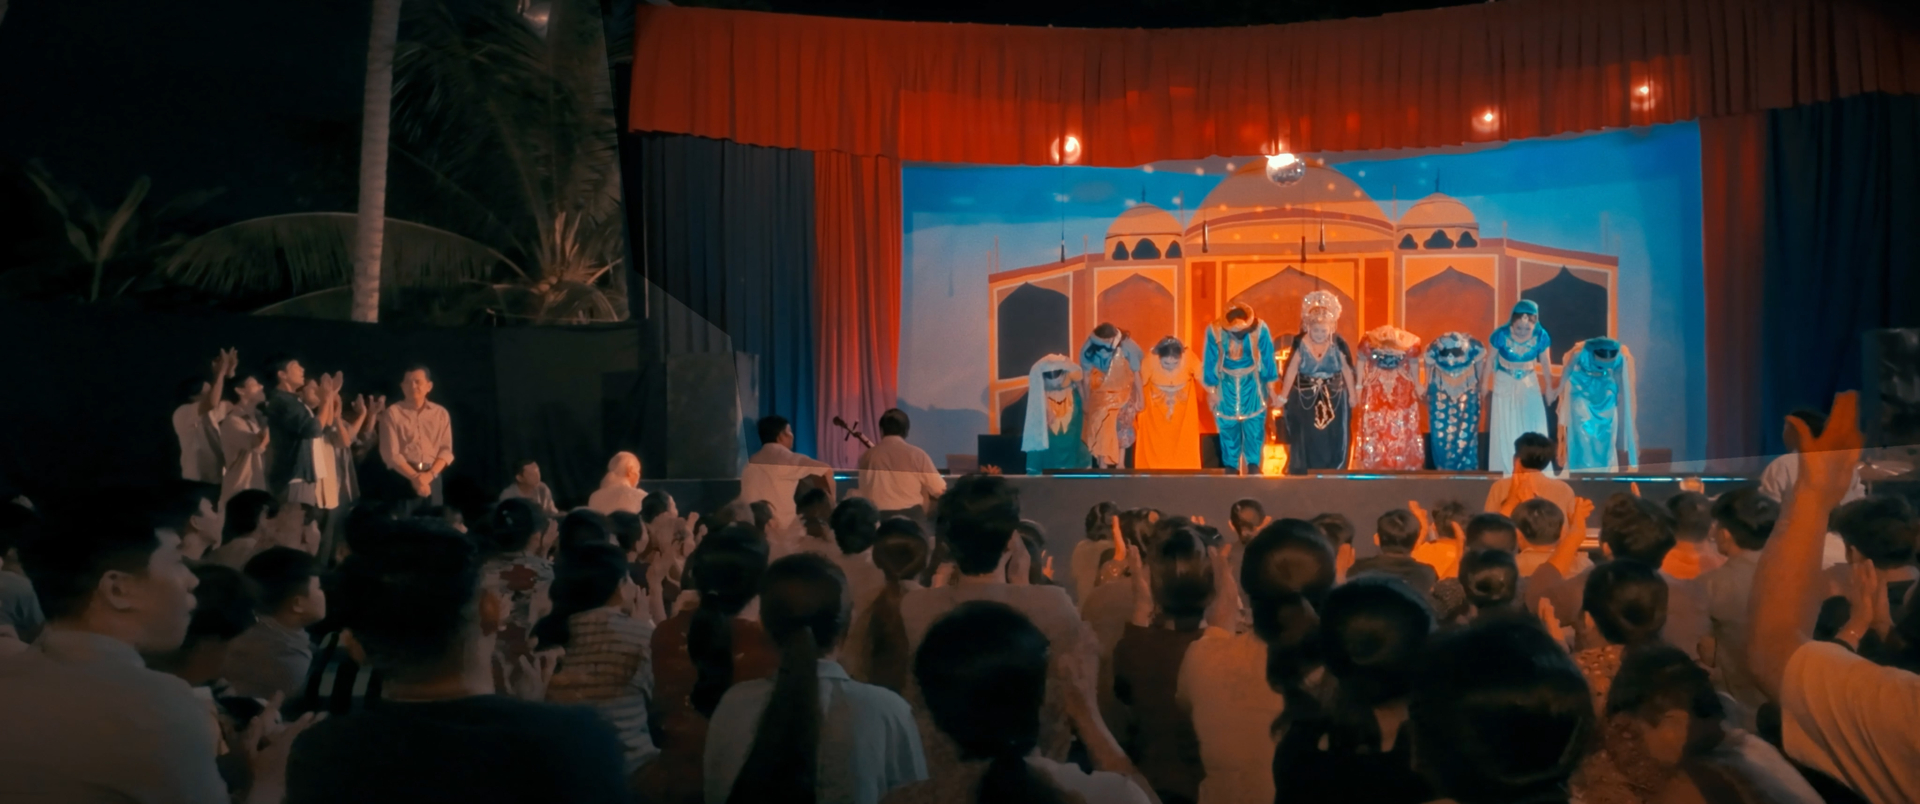 Phim Sáng Đèn tung trailer chính thức, gánh hát Viễn Phương như từ đời bước lên màn ảnh rộng - ảnh 2